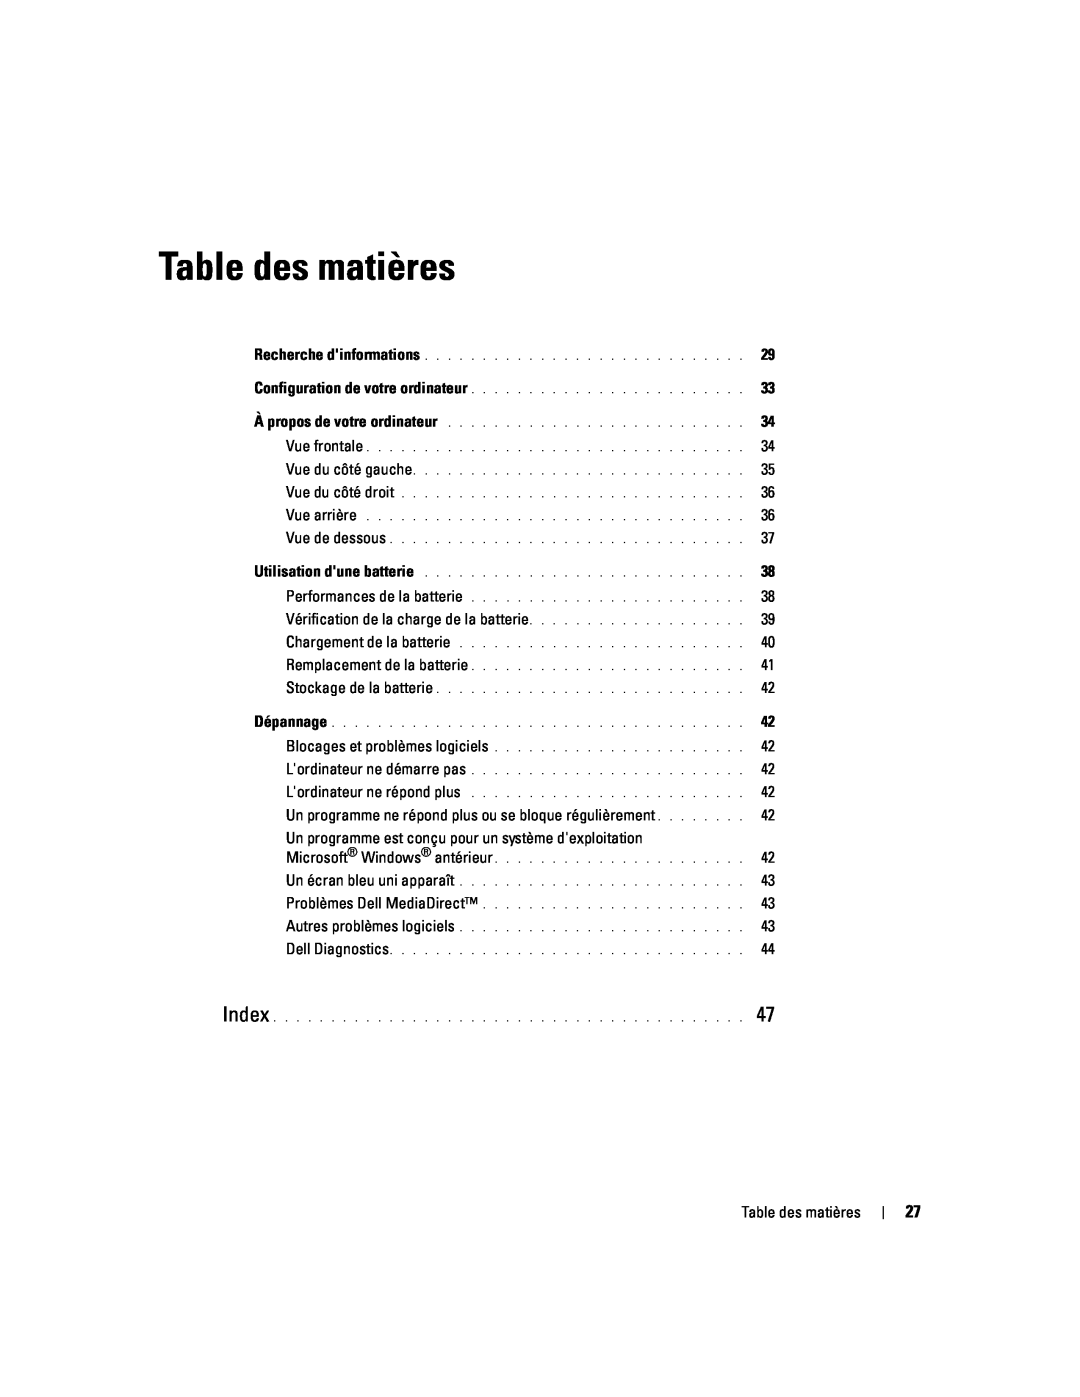 Dell D620 manual Table des matières, Vérification de la charge de la batterie 